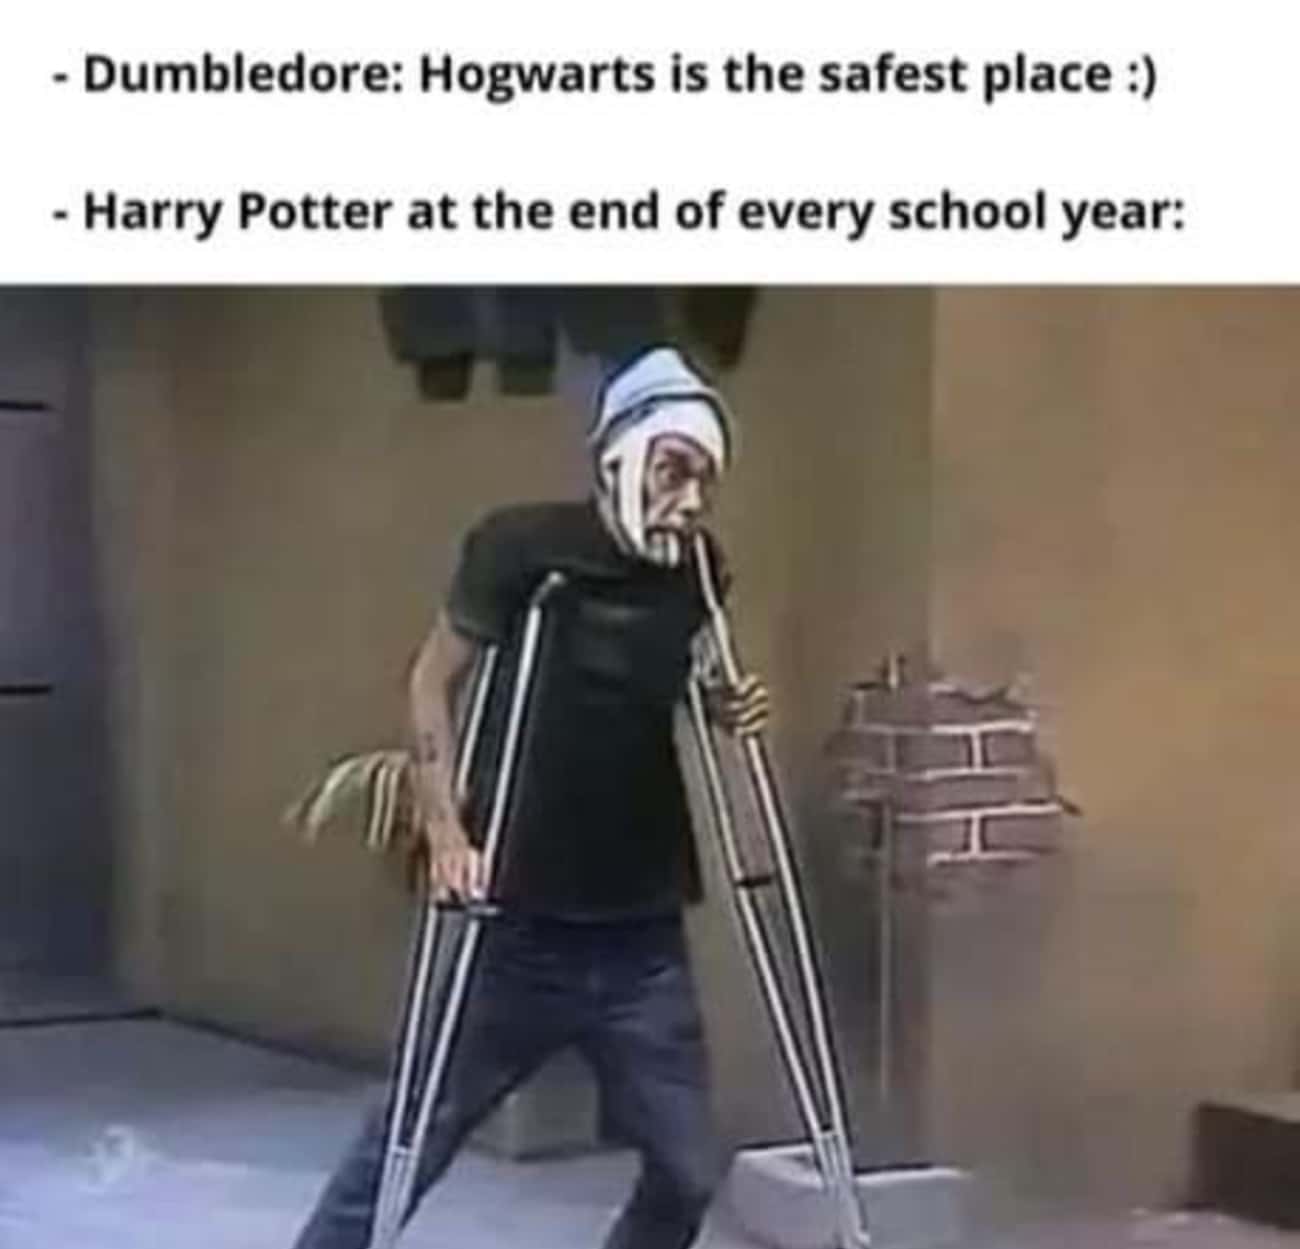 Stay Safe, Harry